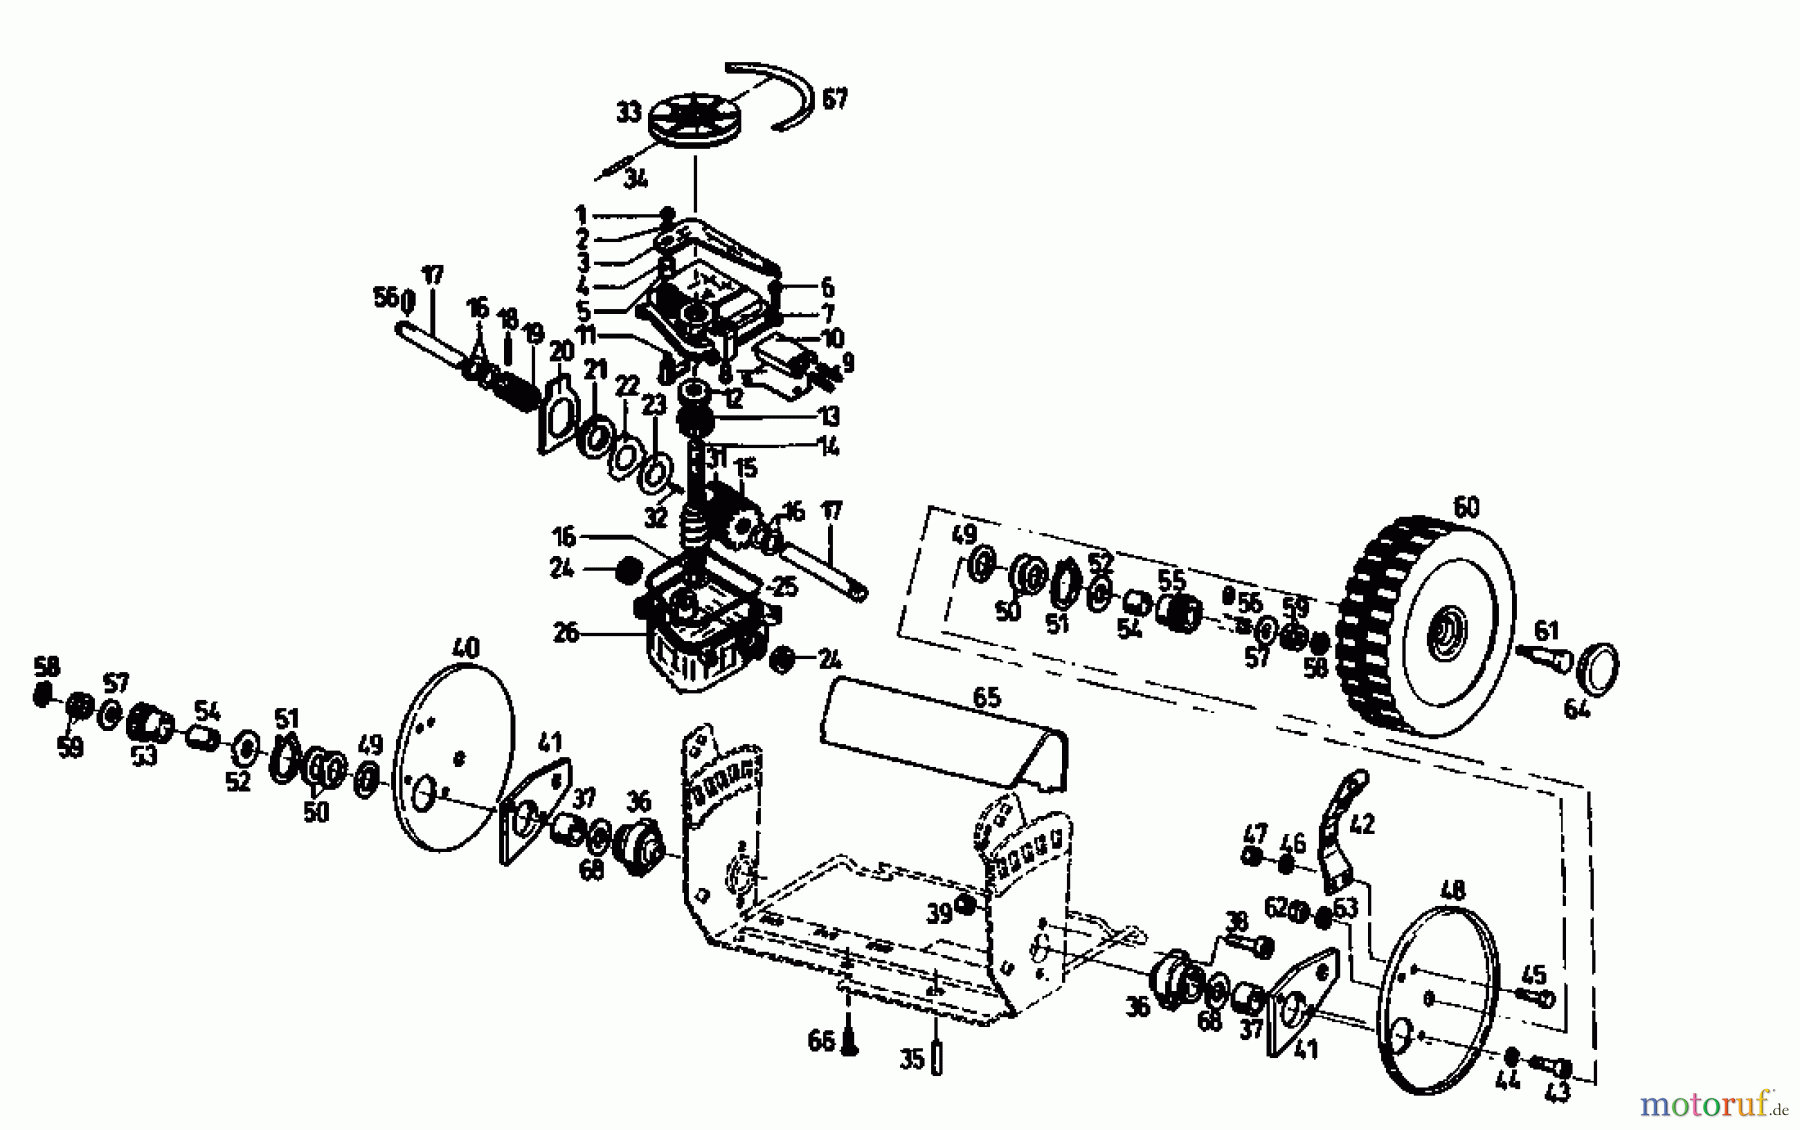  Gutbrod Motormäher mit Antrieb TURBO HBSR 04011.03  (1993) Getriebe